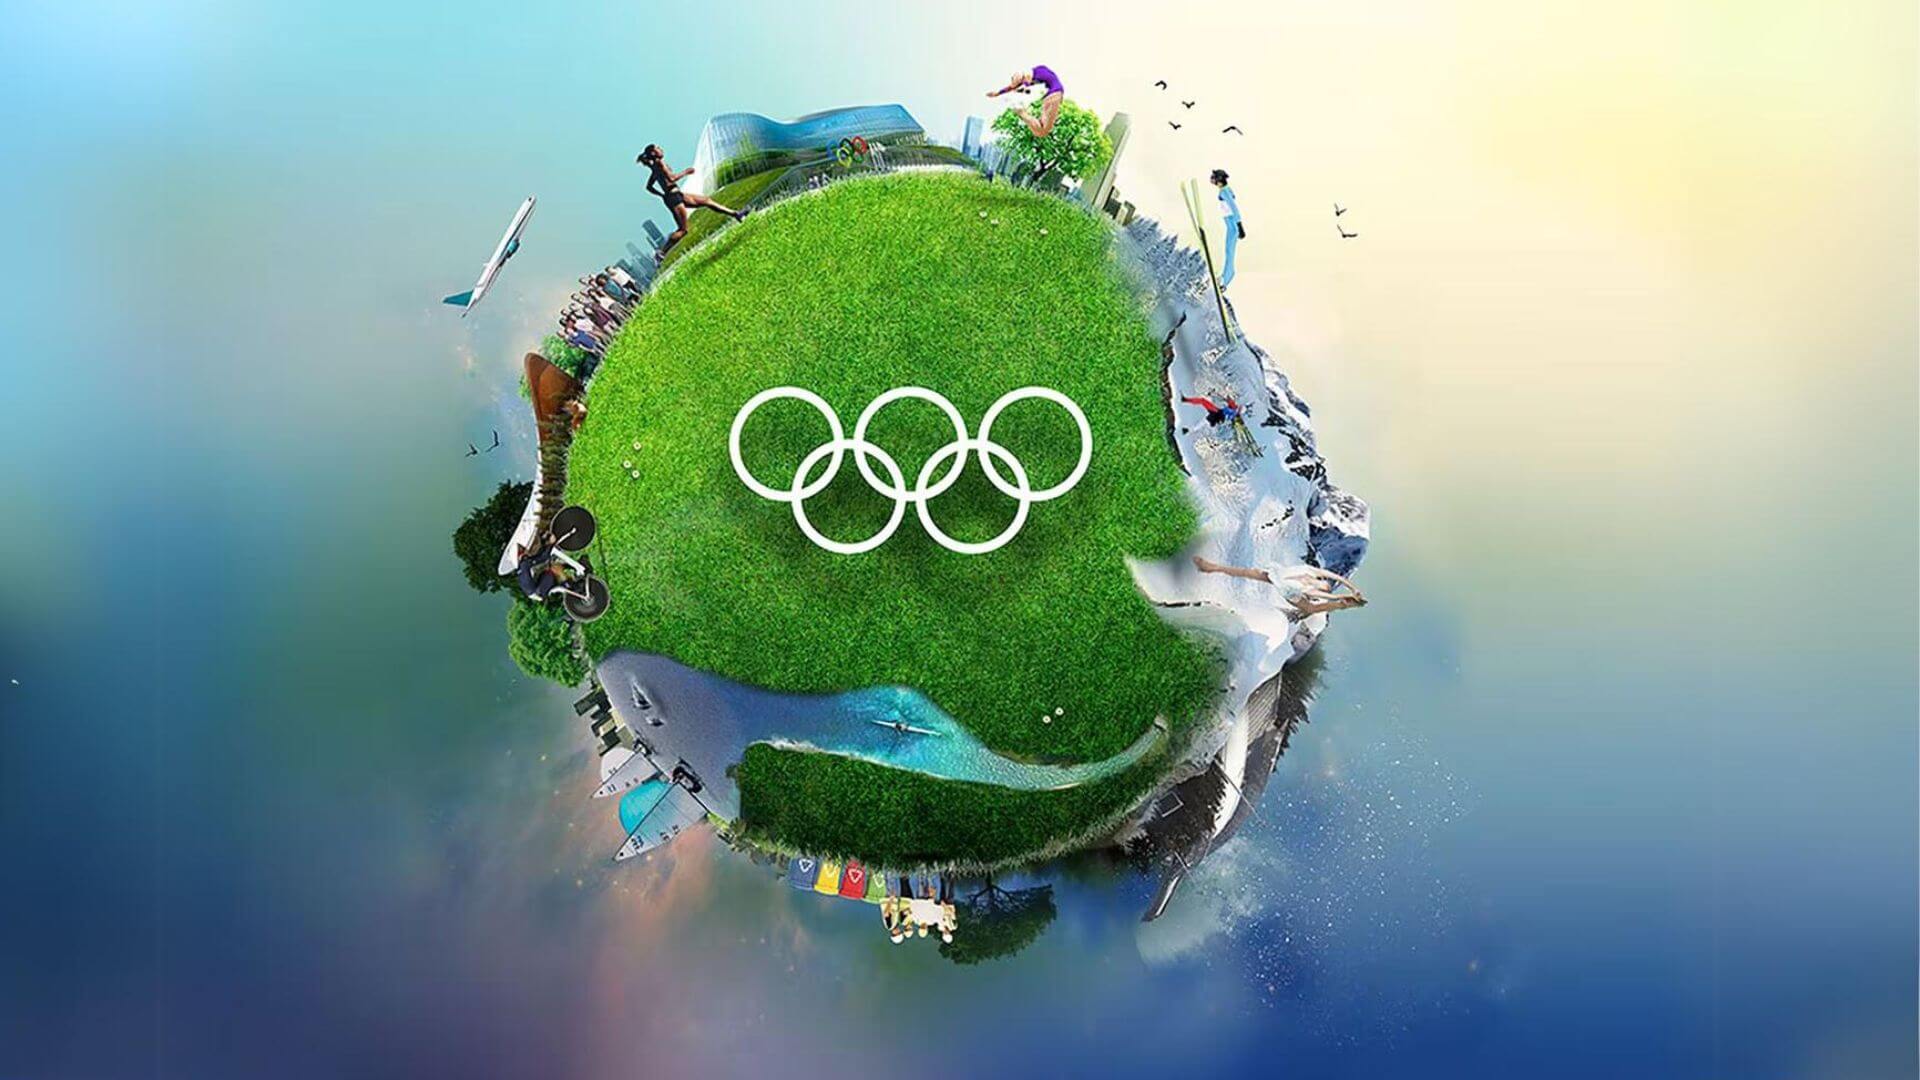 https://static-www.cozynergy.com/jeux-olympiques-paris-promouvoir-transition-energetique.jpg